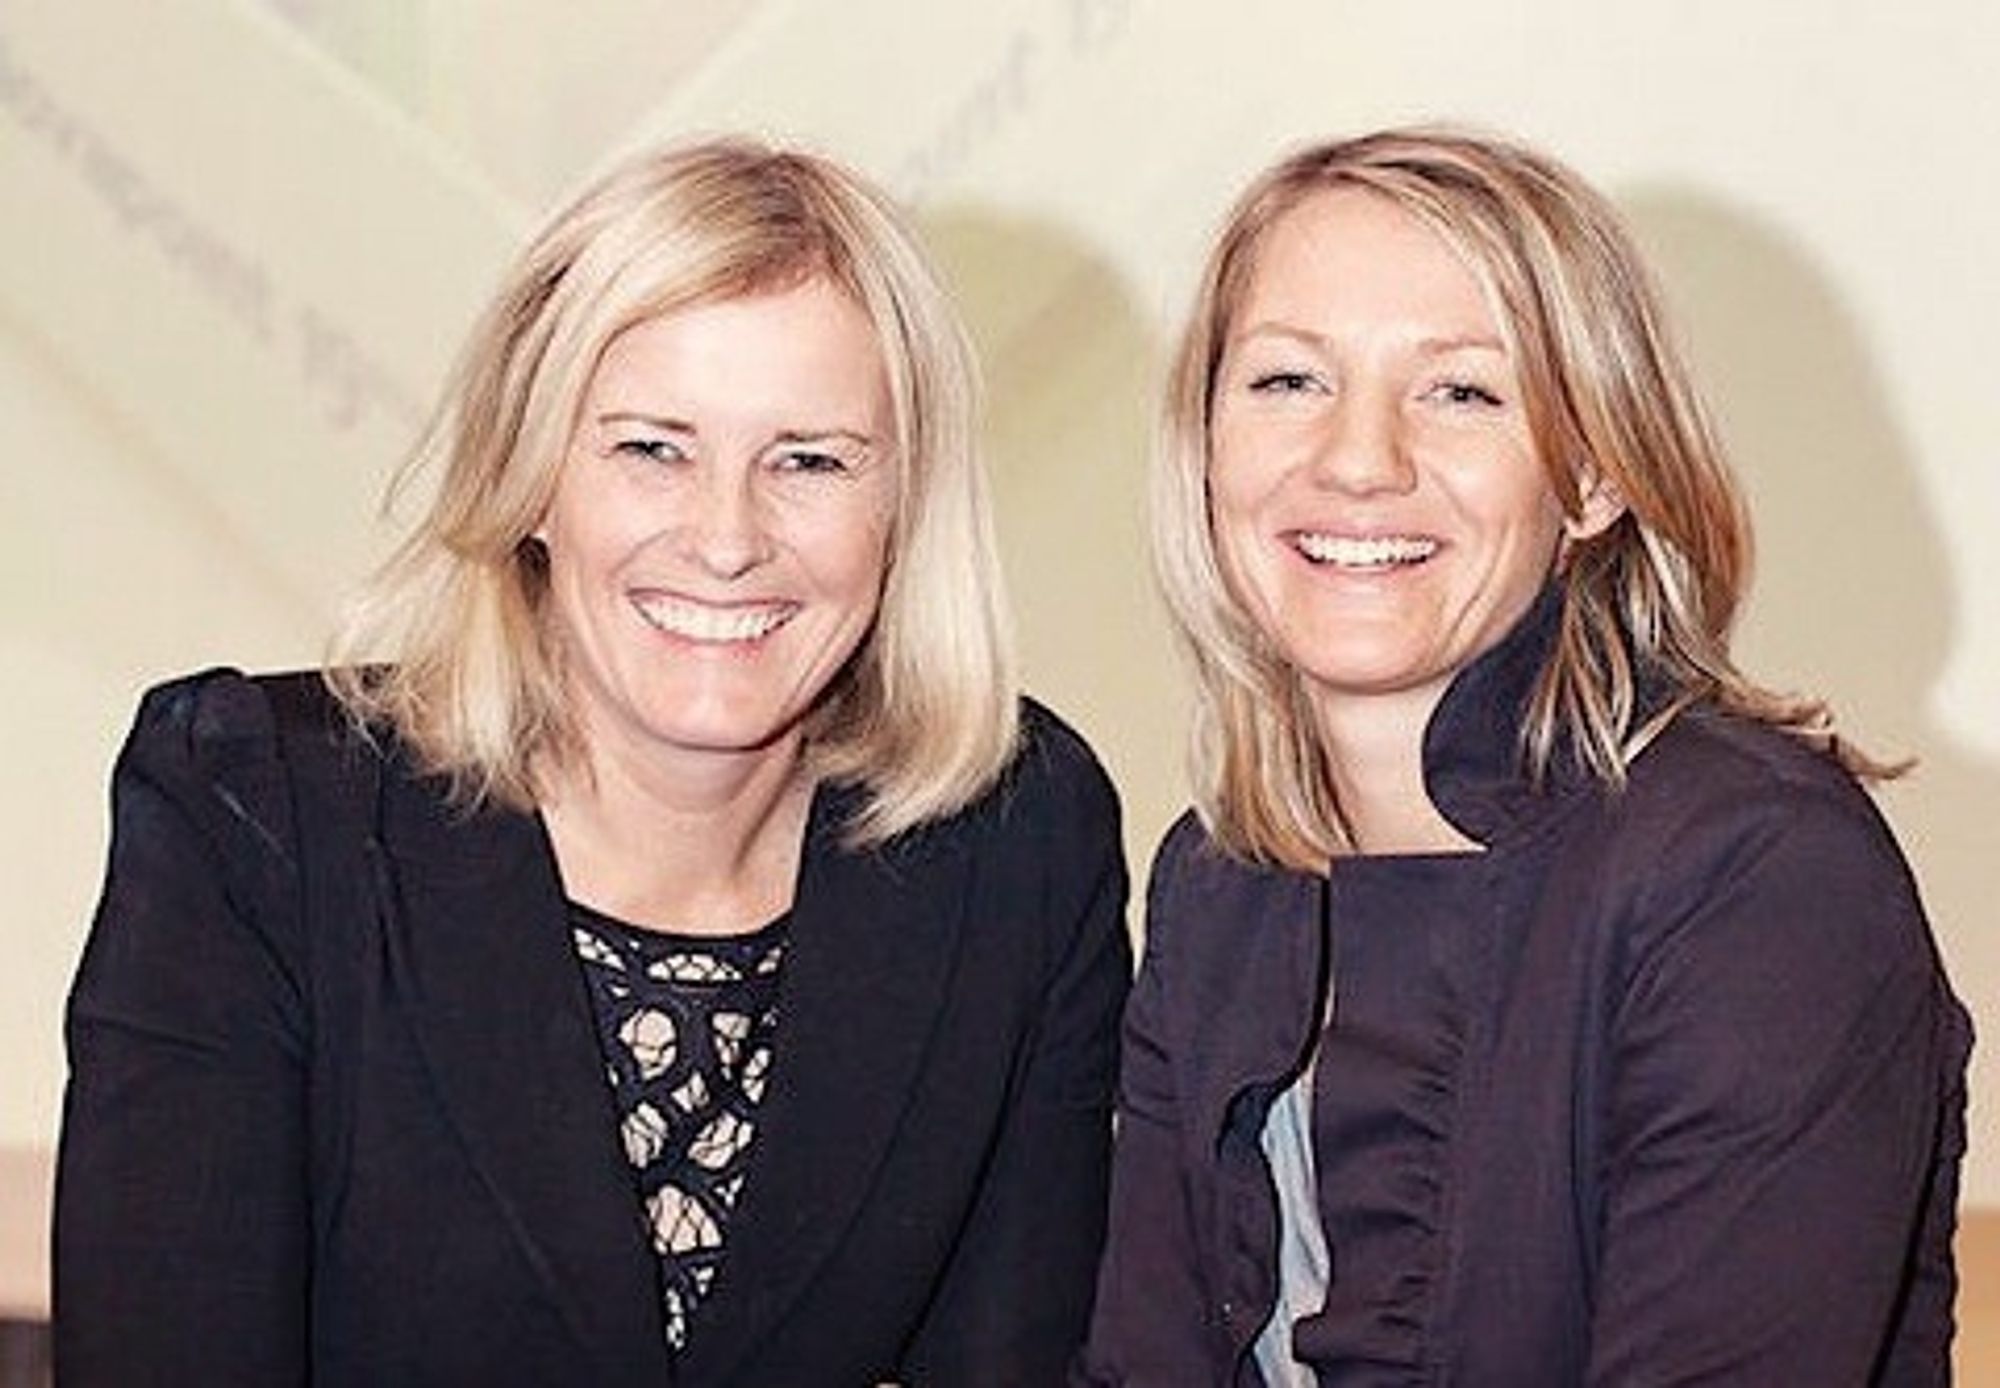 Merete Tøndel og Heidi Berg ble annonsert som vinnetere av ITS-prisen 2014 av samferdselmsinister Ketil Solvik-Olsen under ITS World i Detroit.